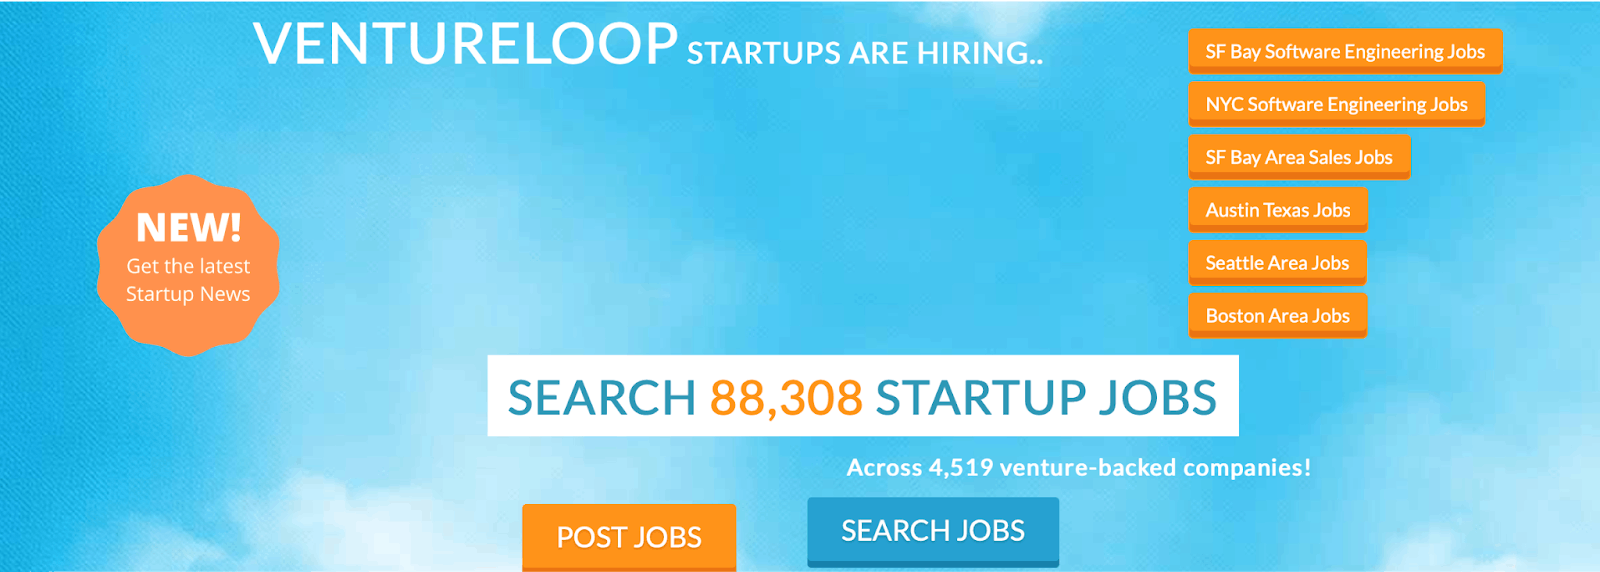 VentureLoop - Search for Online Jobs